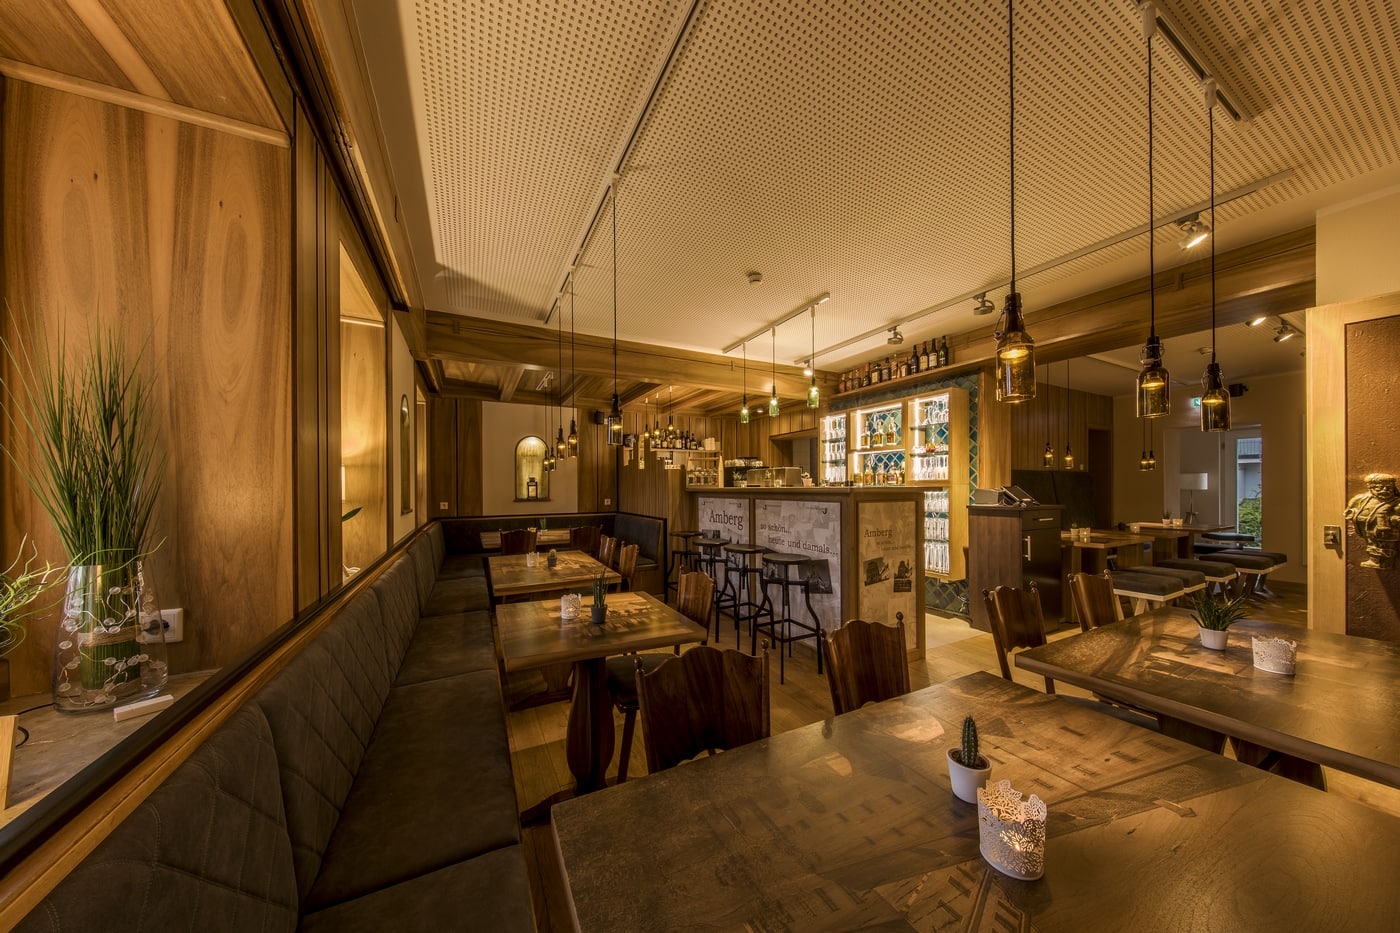 Unsere Bar-Bistro-Weinstube Atelier Teufelsbäck bietet Gemütlichkeit in stylischer Atmosphäre.